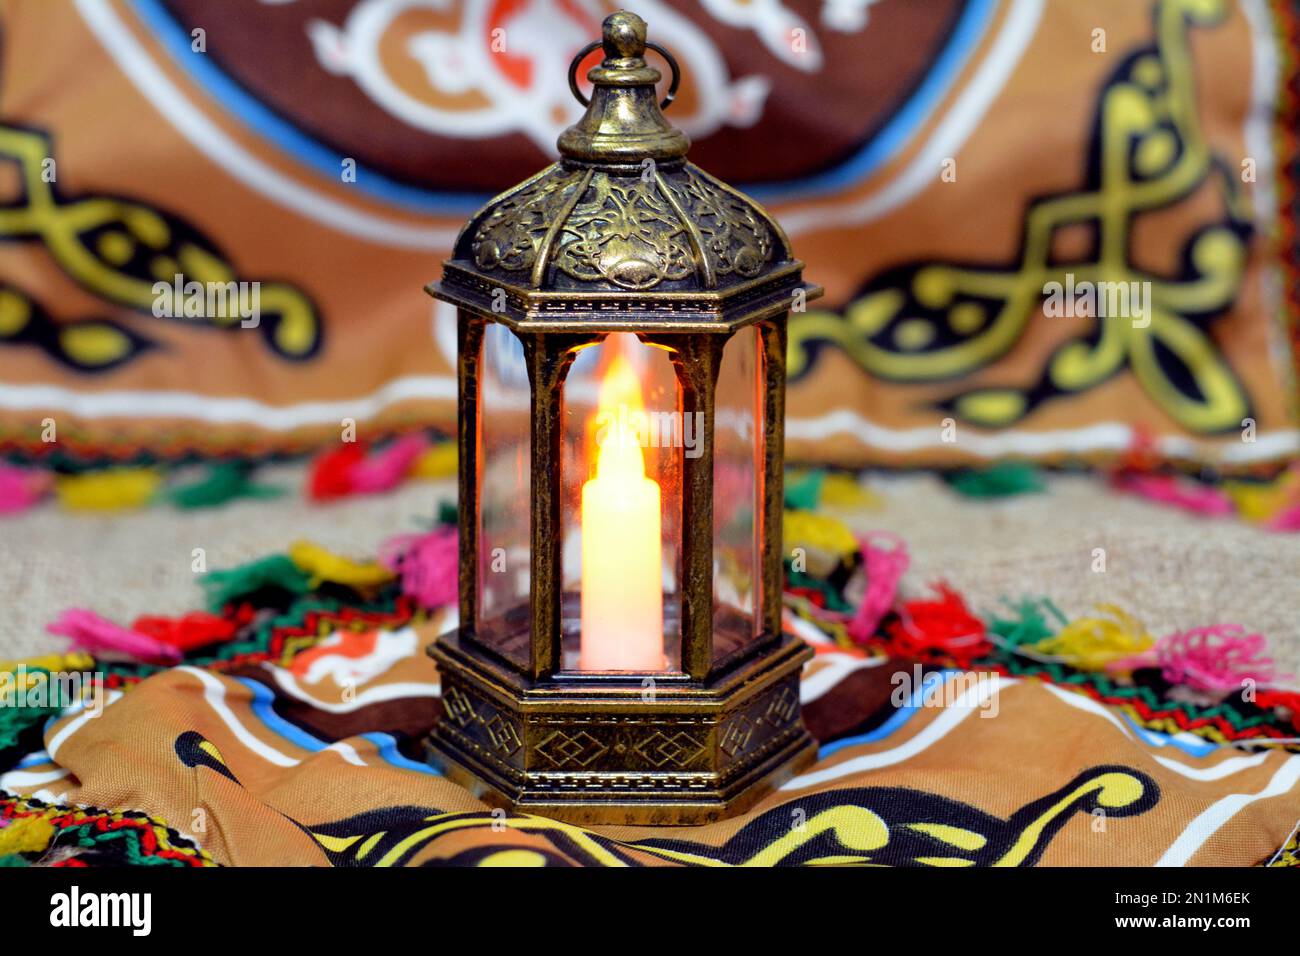 https://c8.alamy.com/compde/2n1m6ek/ramadan-lantern-lampe-oder-fanous-ramadan-mit-ramadan-hintergrund-zur-feier-der-islamischen-fastenzeit-in-arabischen-islamischen-landern-reli-2n1m6ek.jpg